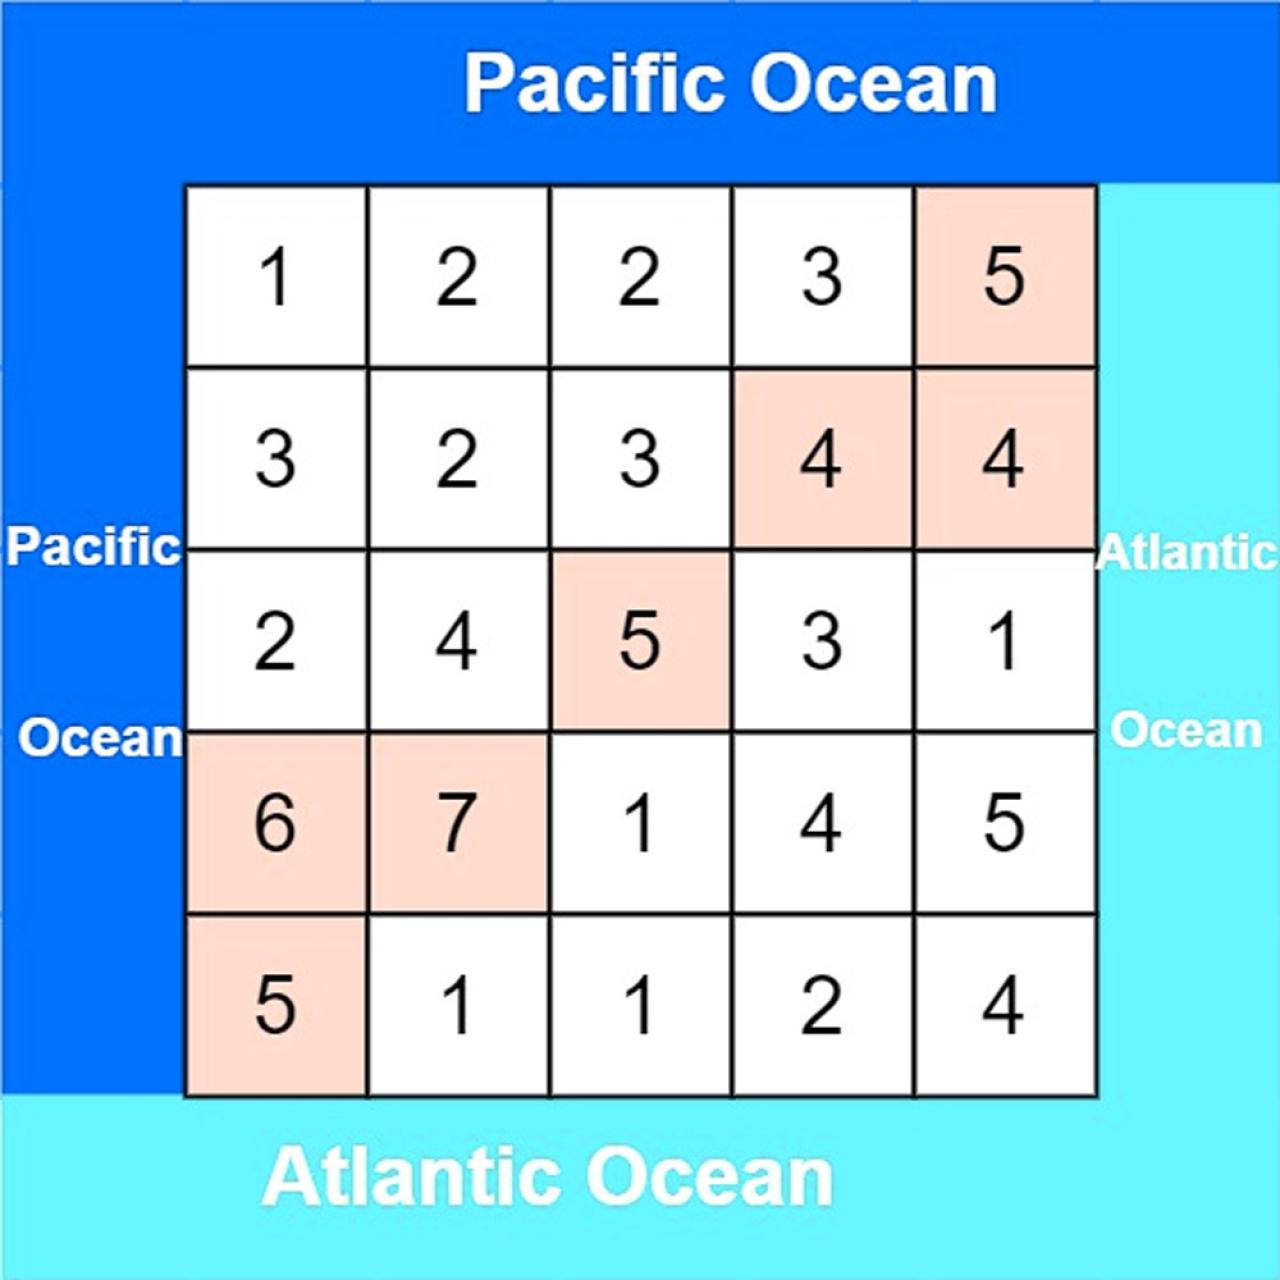 示例数据 [[1，2，2，3，5]，[3，2，3，4，4]，[2，4，5，3，1]，[6，7，1，4，5]，[5，1，1，2，4]] 示意图，左边是太平洋，右边是大西洋